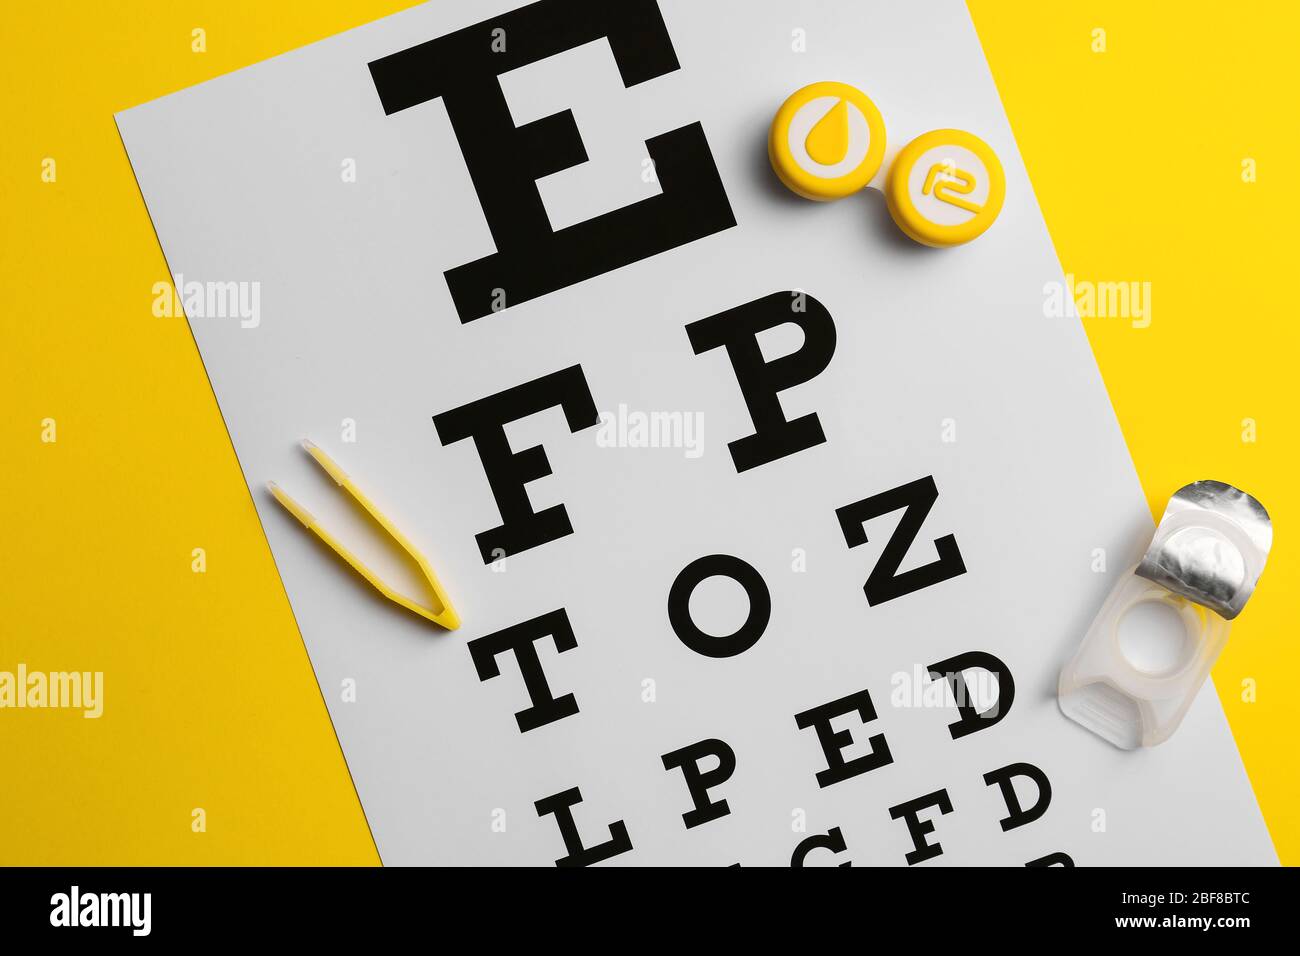 Behälter mit Kontaktlinsen, Pinzette und Augentestkarte auf farbigem Hintergrund Stockfoto